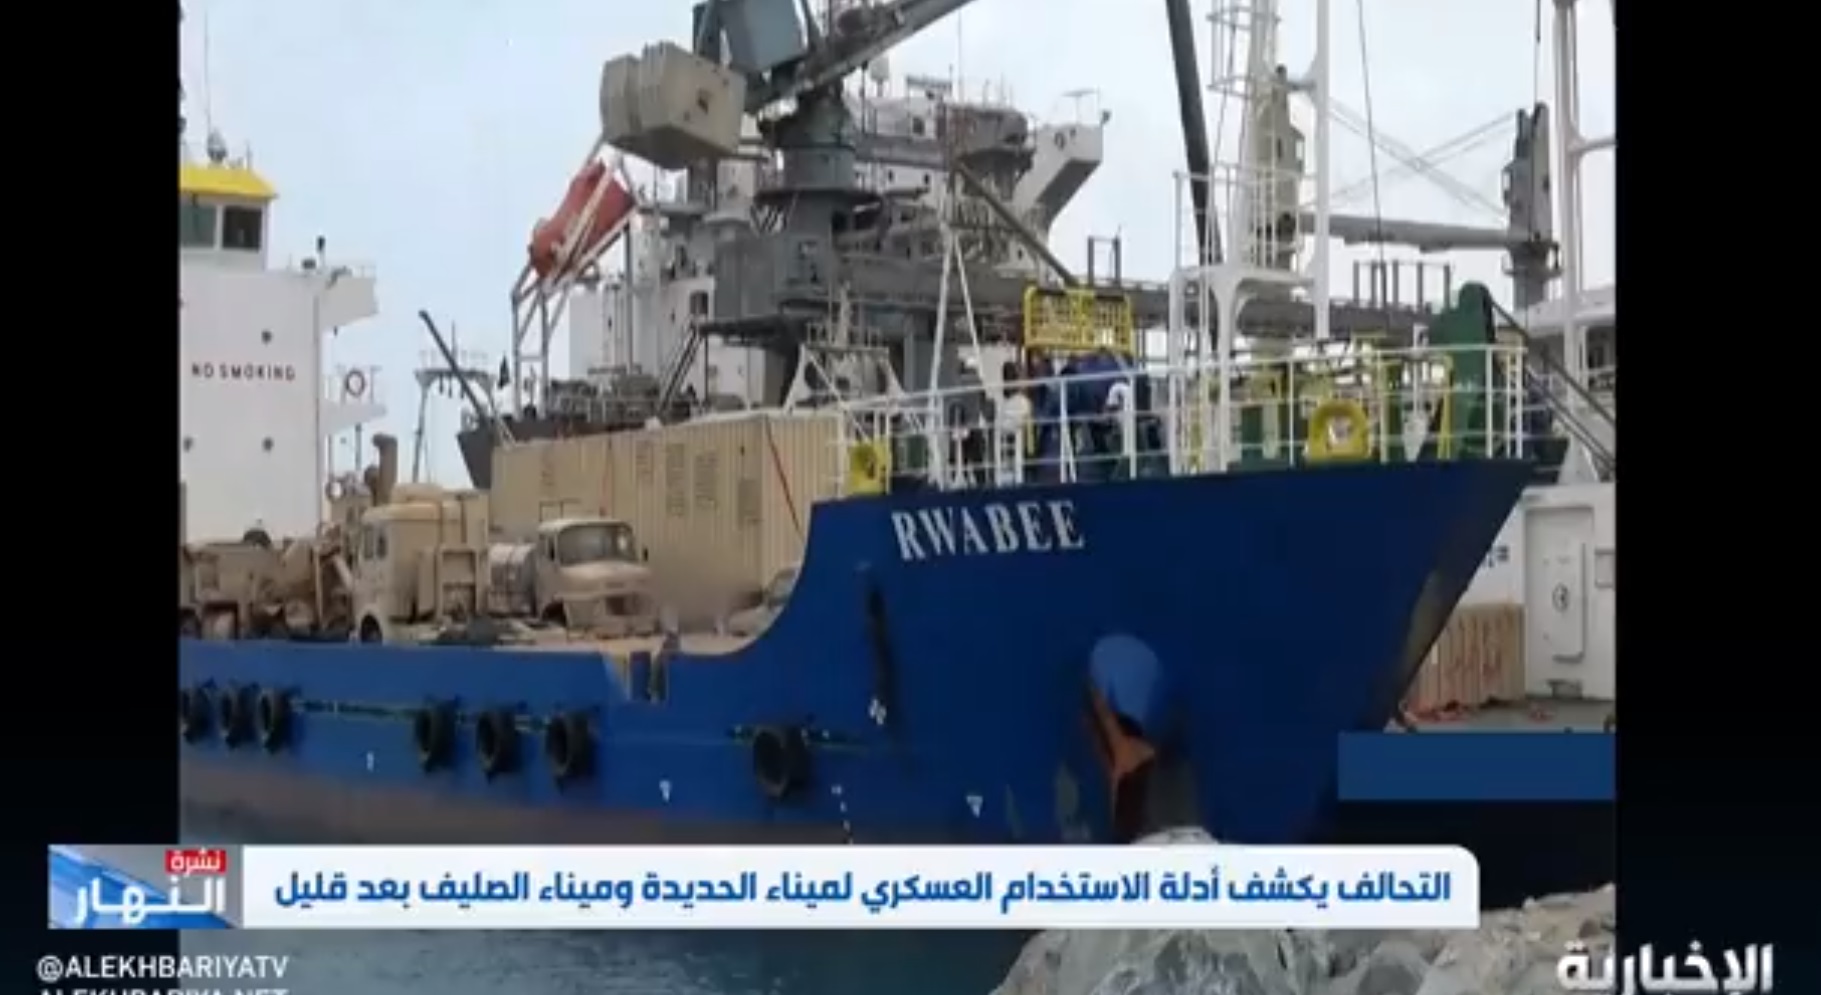 التحالف يكشف انتهاكات الحوثي البحرية عبر الحديدة: الميليشيا أطلقت 100 زورق مفخخ